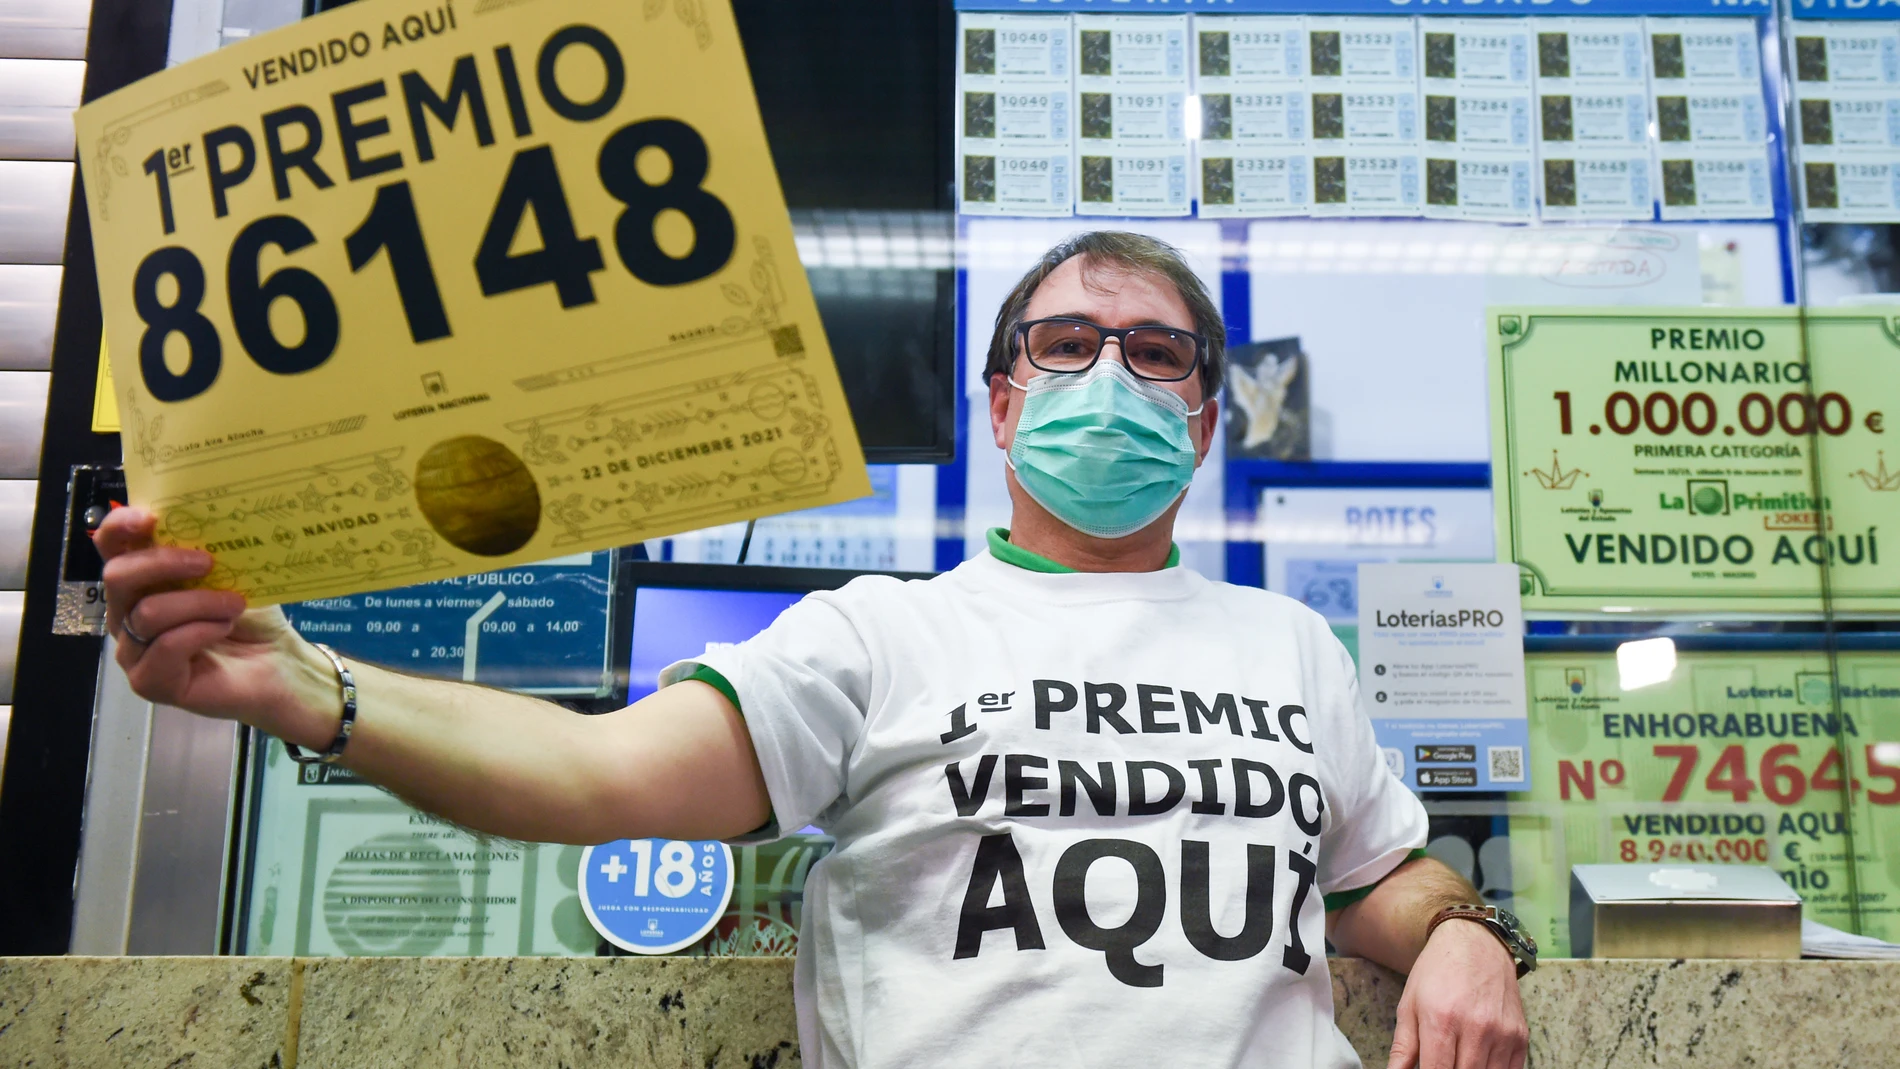 Javier Moñino, empleado de la administración situada en la zona del AVE de la Estación de Atocha, celebra que ha vendido parte del número 86148 correspondiente al 'Gordo'